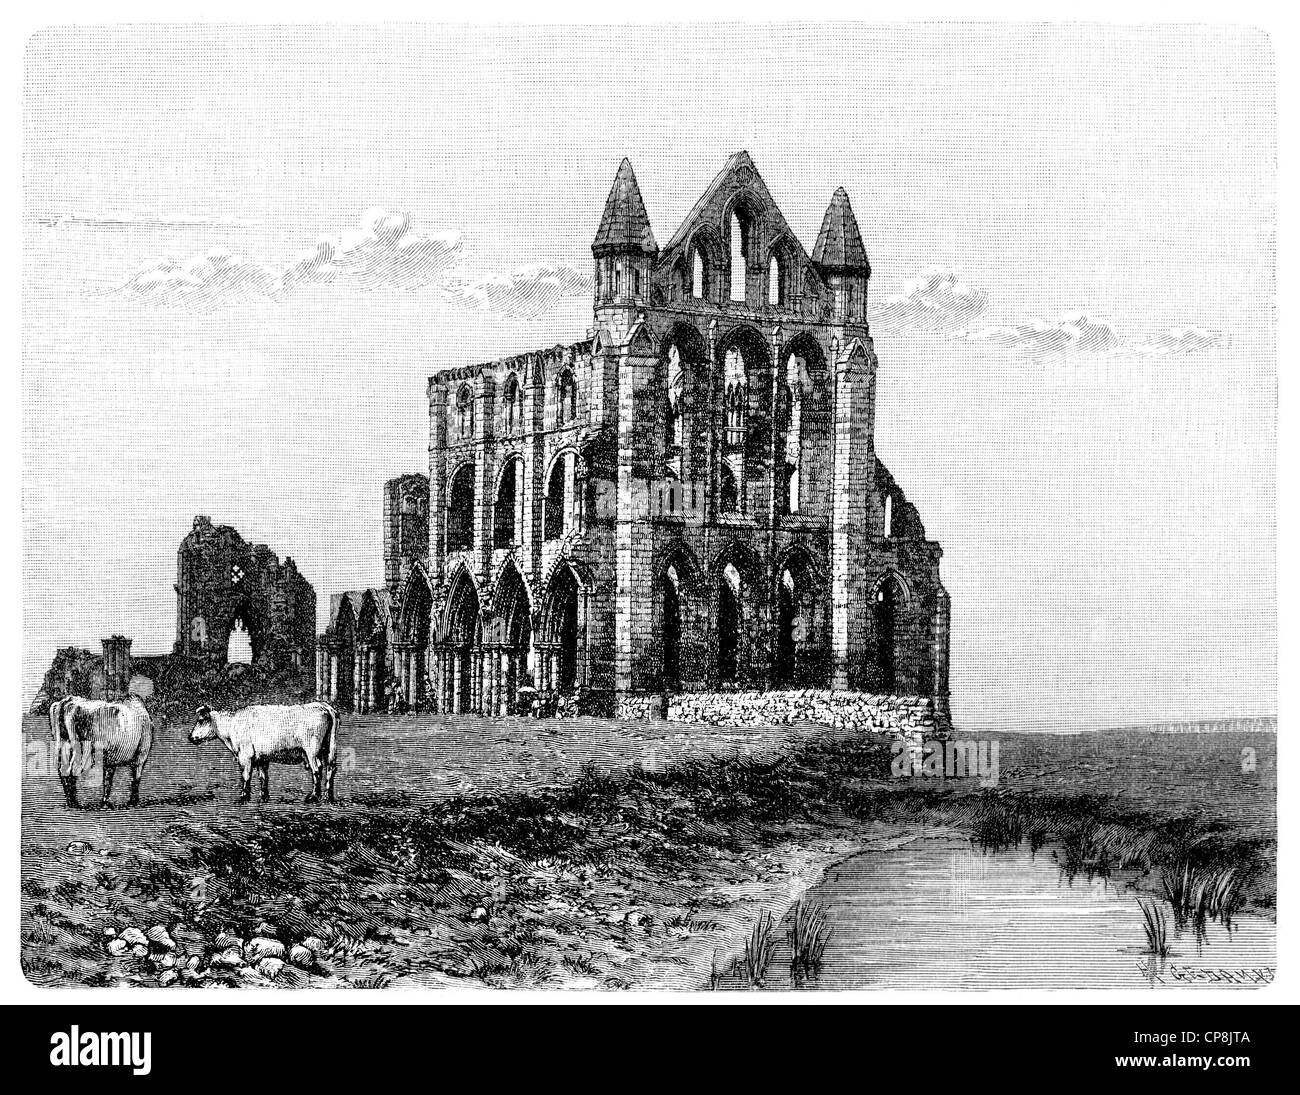 Whitby Abbey, ein ehemaliges Kloster in Whitby, Yorkshire, England, Europa, Historische Zeichnung aus dem 19. Jahrhundert, Whitby Abbey, ein ehemaliges Kloster in Whitby, Grafschaft Yorkshire, England, Europa Stockfoto